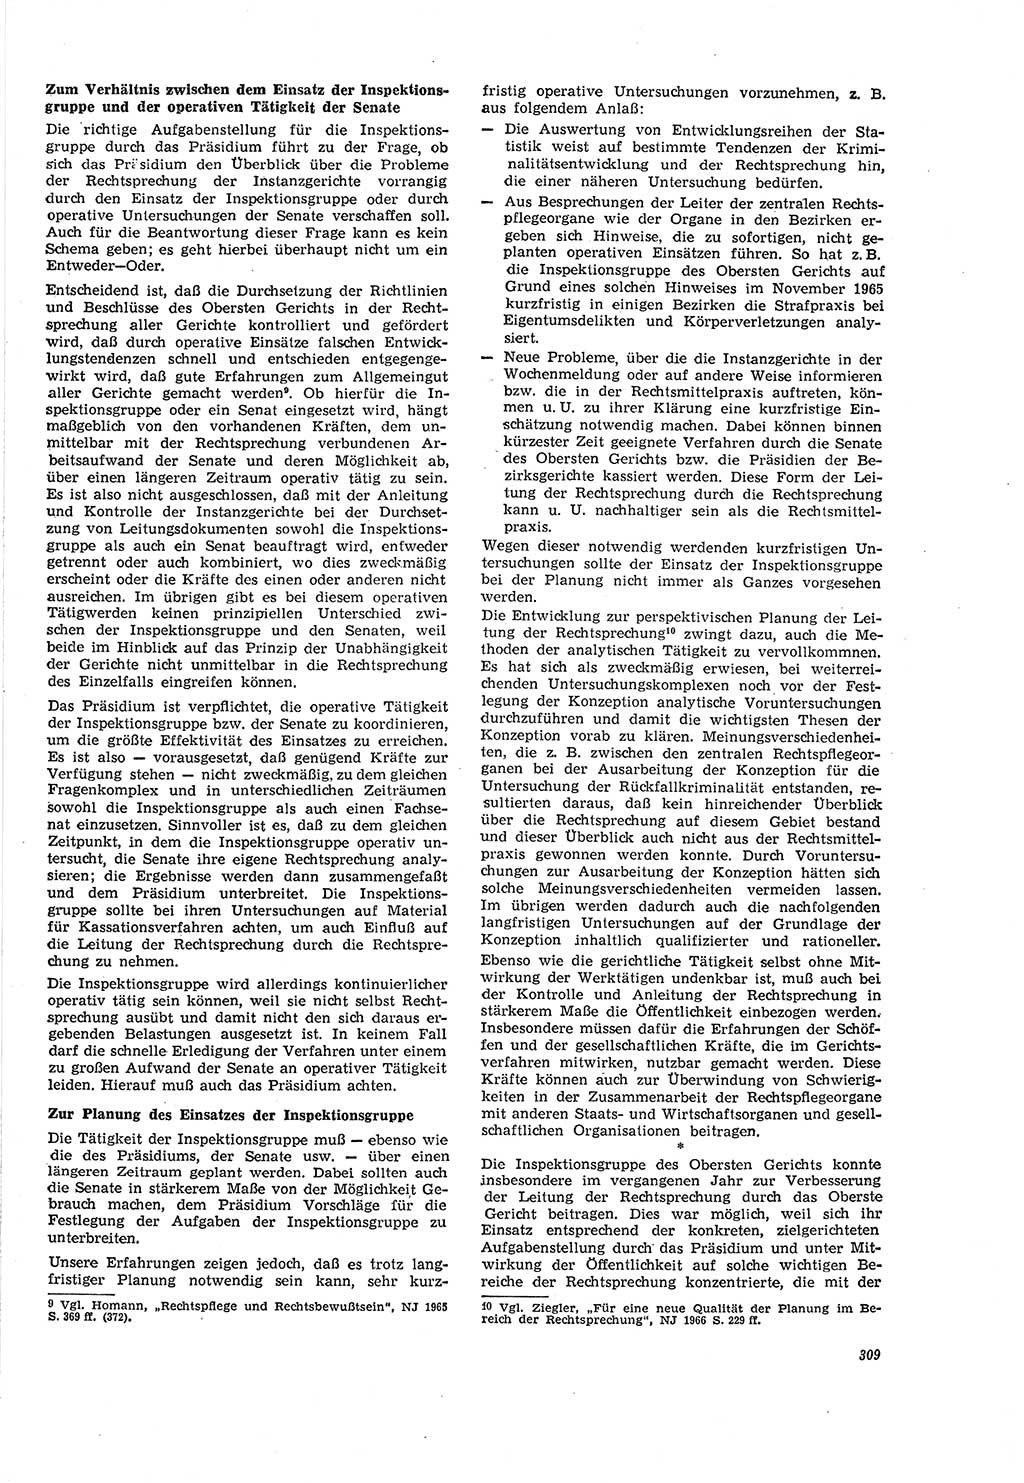 Neue Justiz (NJ), Zeitschrift für Recht und Rechtswissenschaft [Deutsche Demokratische Republik (DDR)], 20. Jahrgang 1966, Seite 309 (NJ DDR 1966, S. 309)